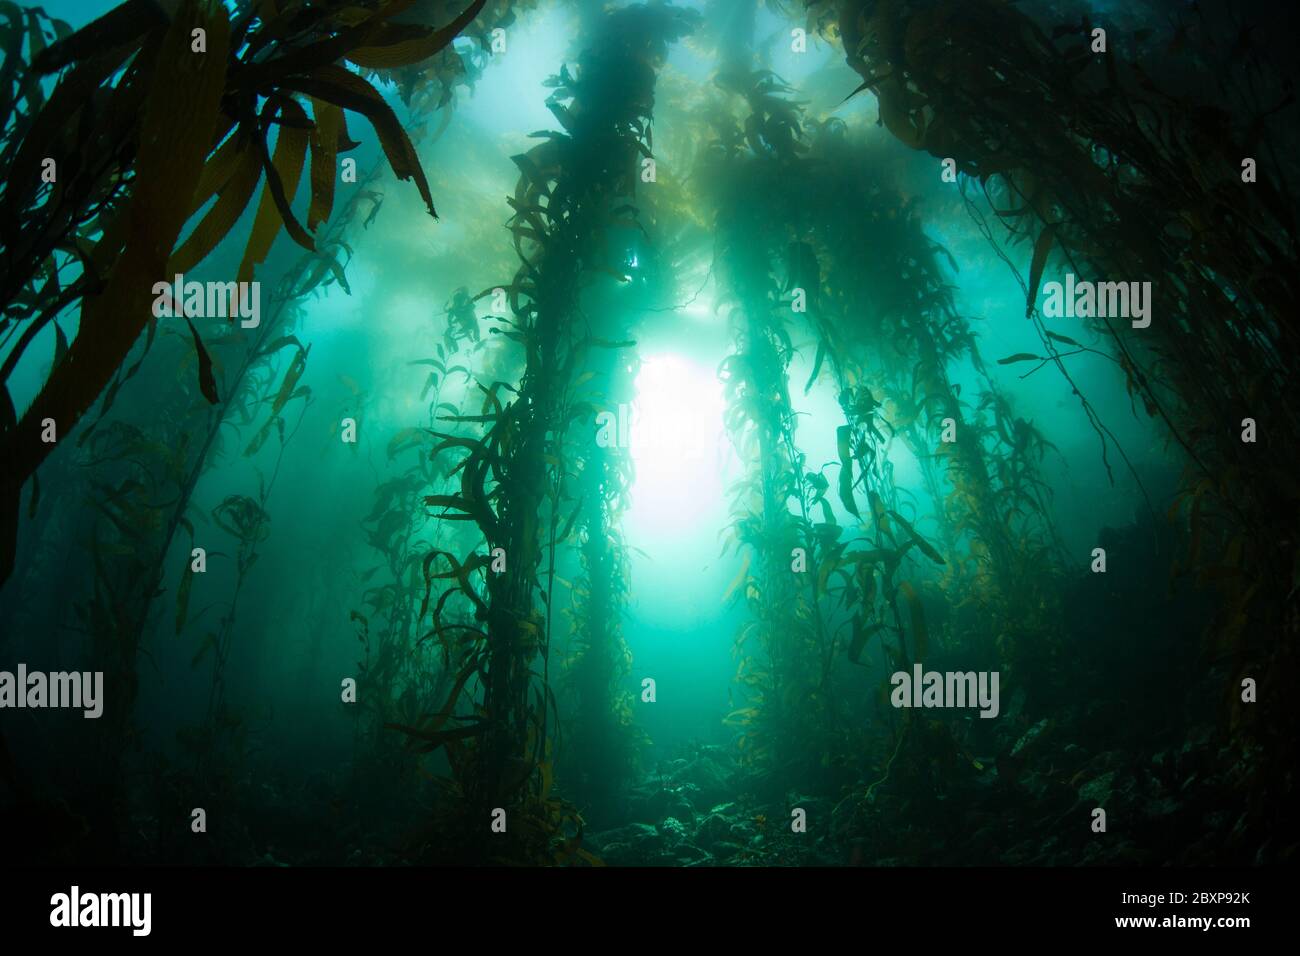 Une forêt luxuriante et biodiversifiée de varech géant, Macrocystis pyrifera, pousse dans les eaux froides de l'est du Pacifique qui s'écoulent le long de la côte californienne. Banque D'Images